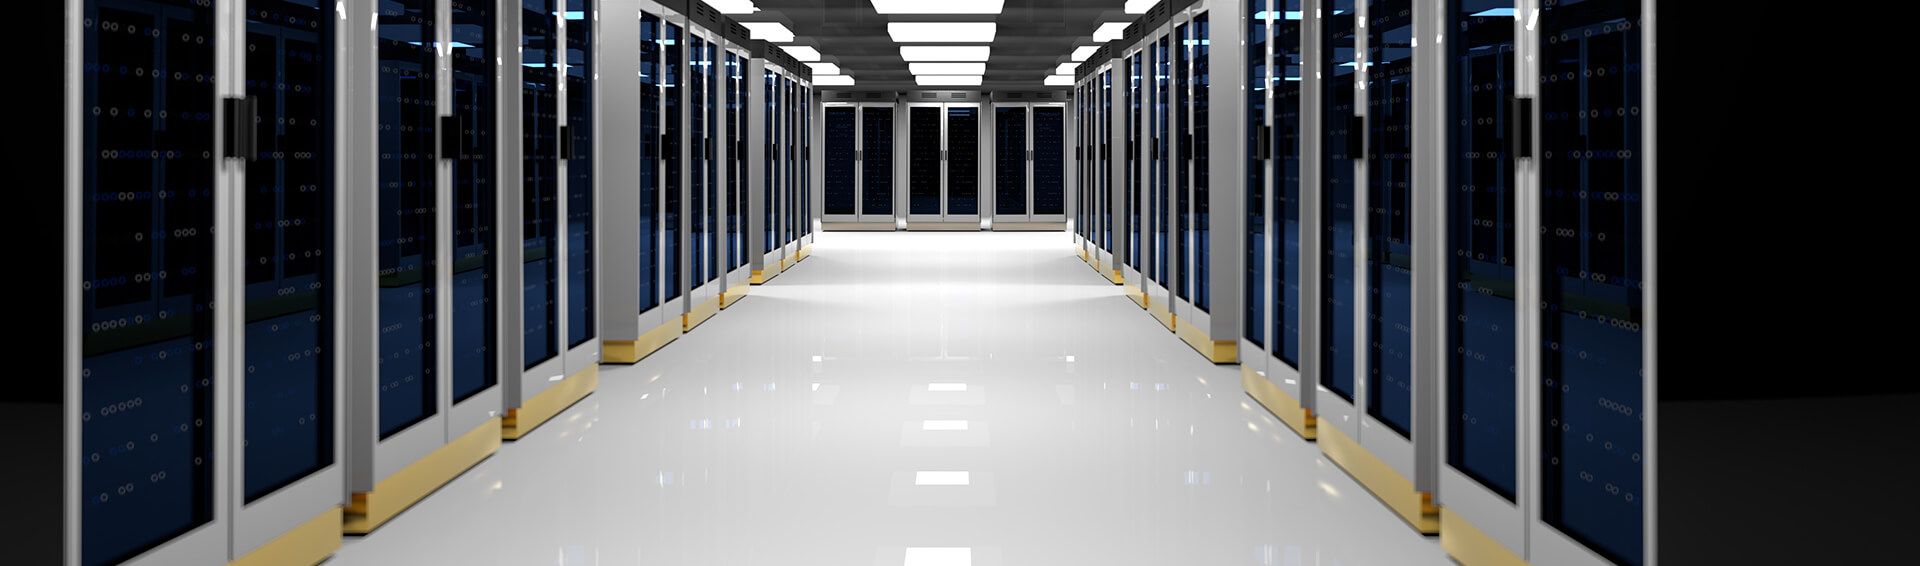 data server hardware computer storage flooring